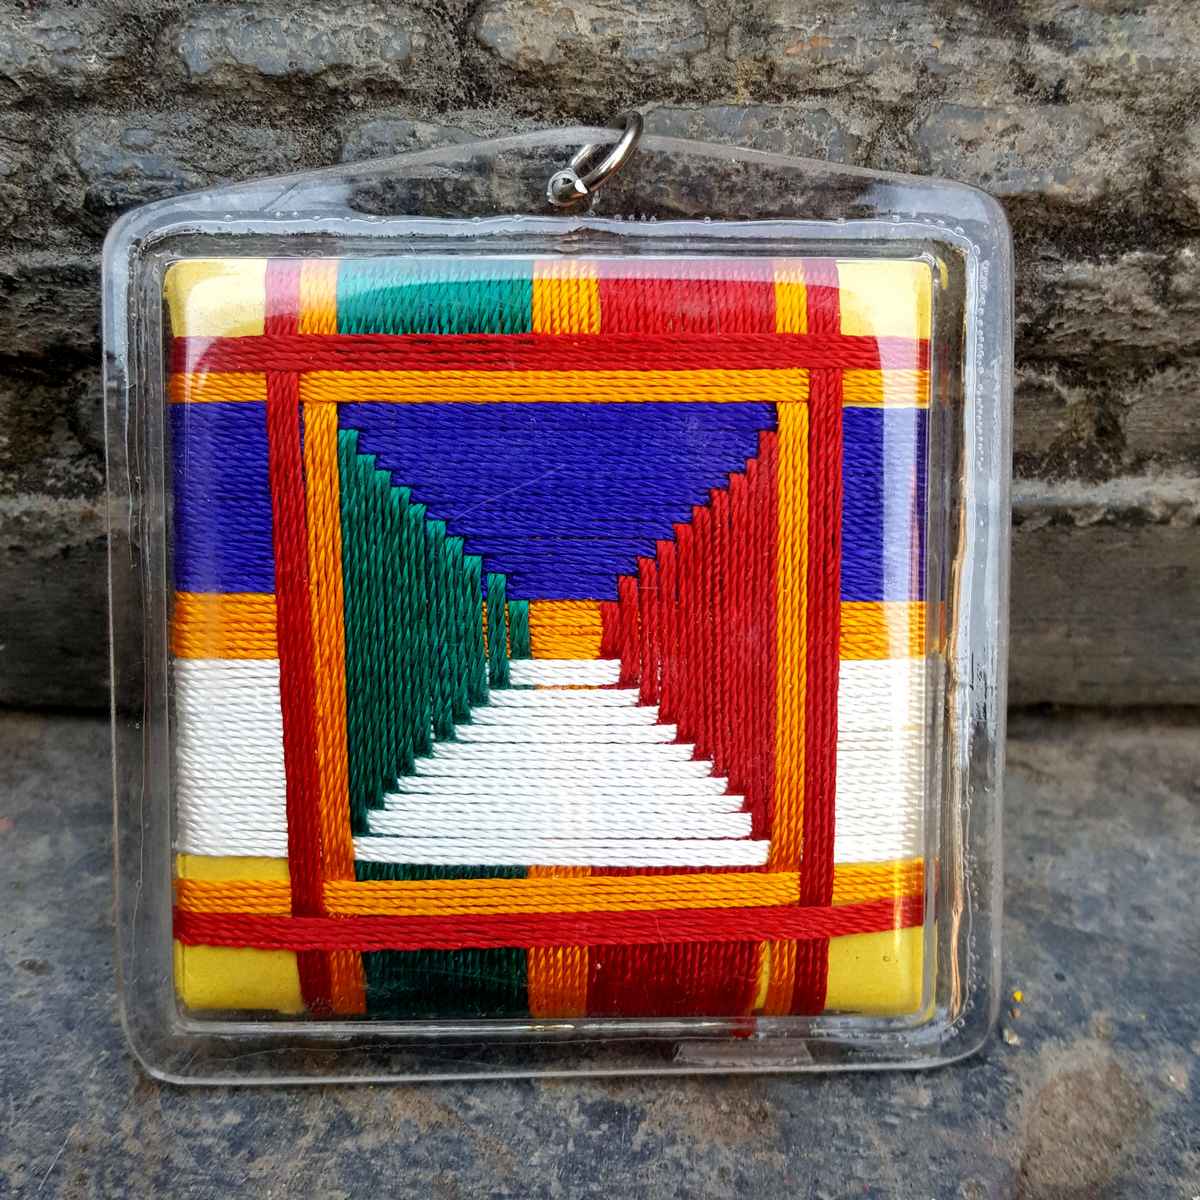 Jambhala - Large Tibetan Mantra Amulet With Hard Plastic Coat